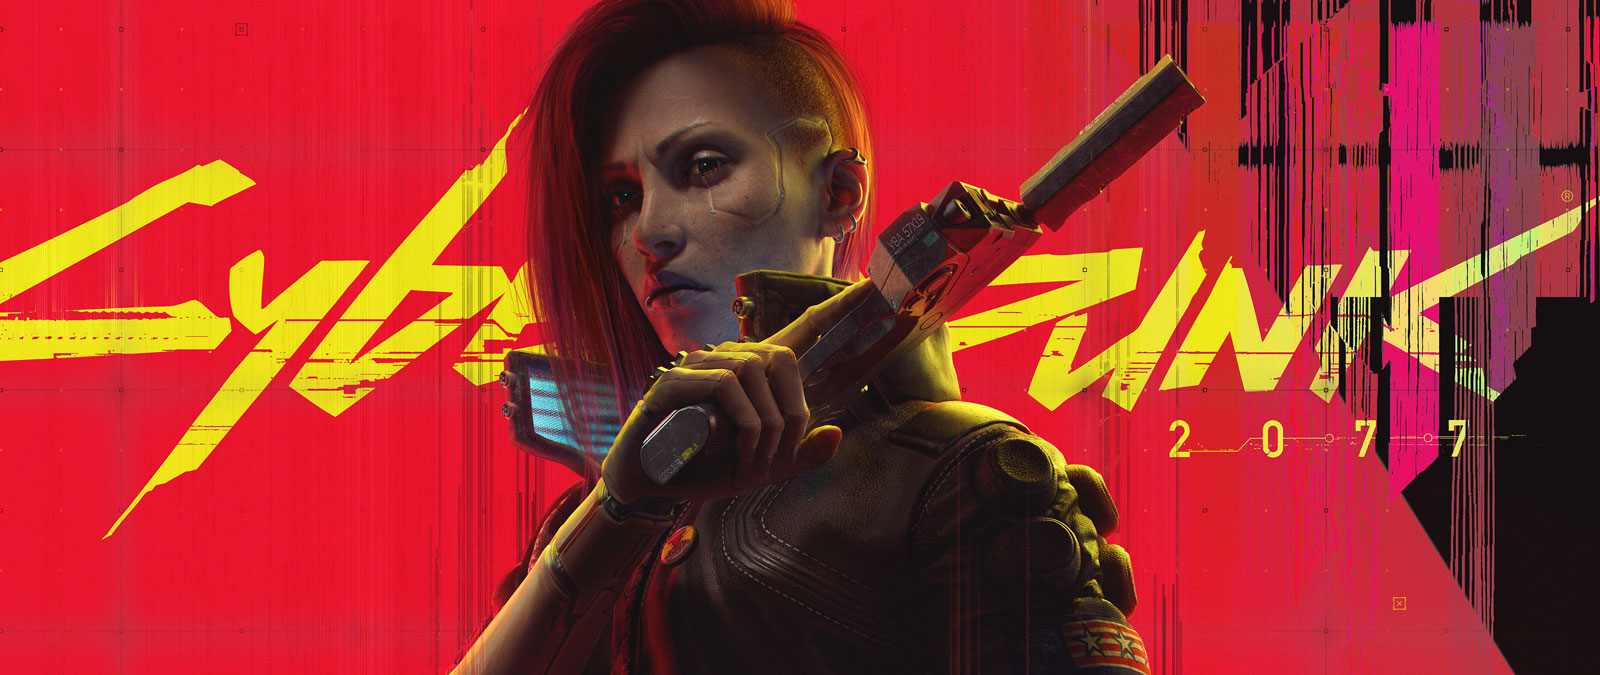 Cyberpunk 2077, un personnage cybernétiquement modifié et marqué d’une cicatrice sur la joue brandit son arme en signe d’intimidation.